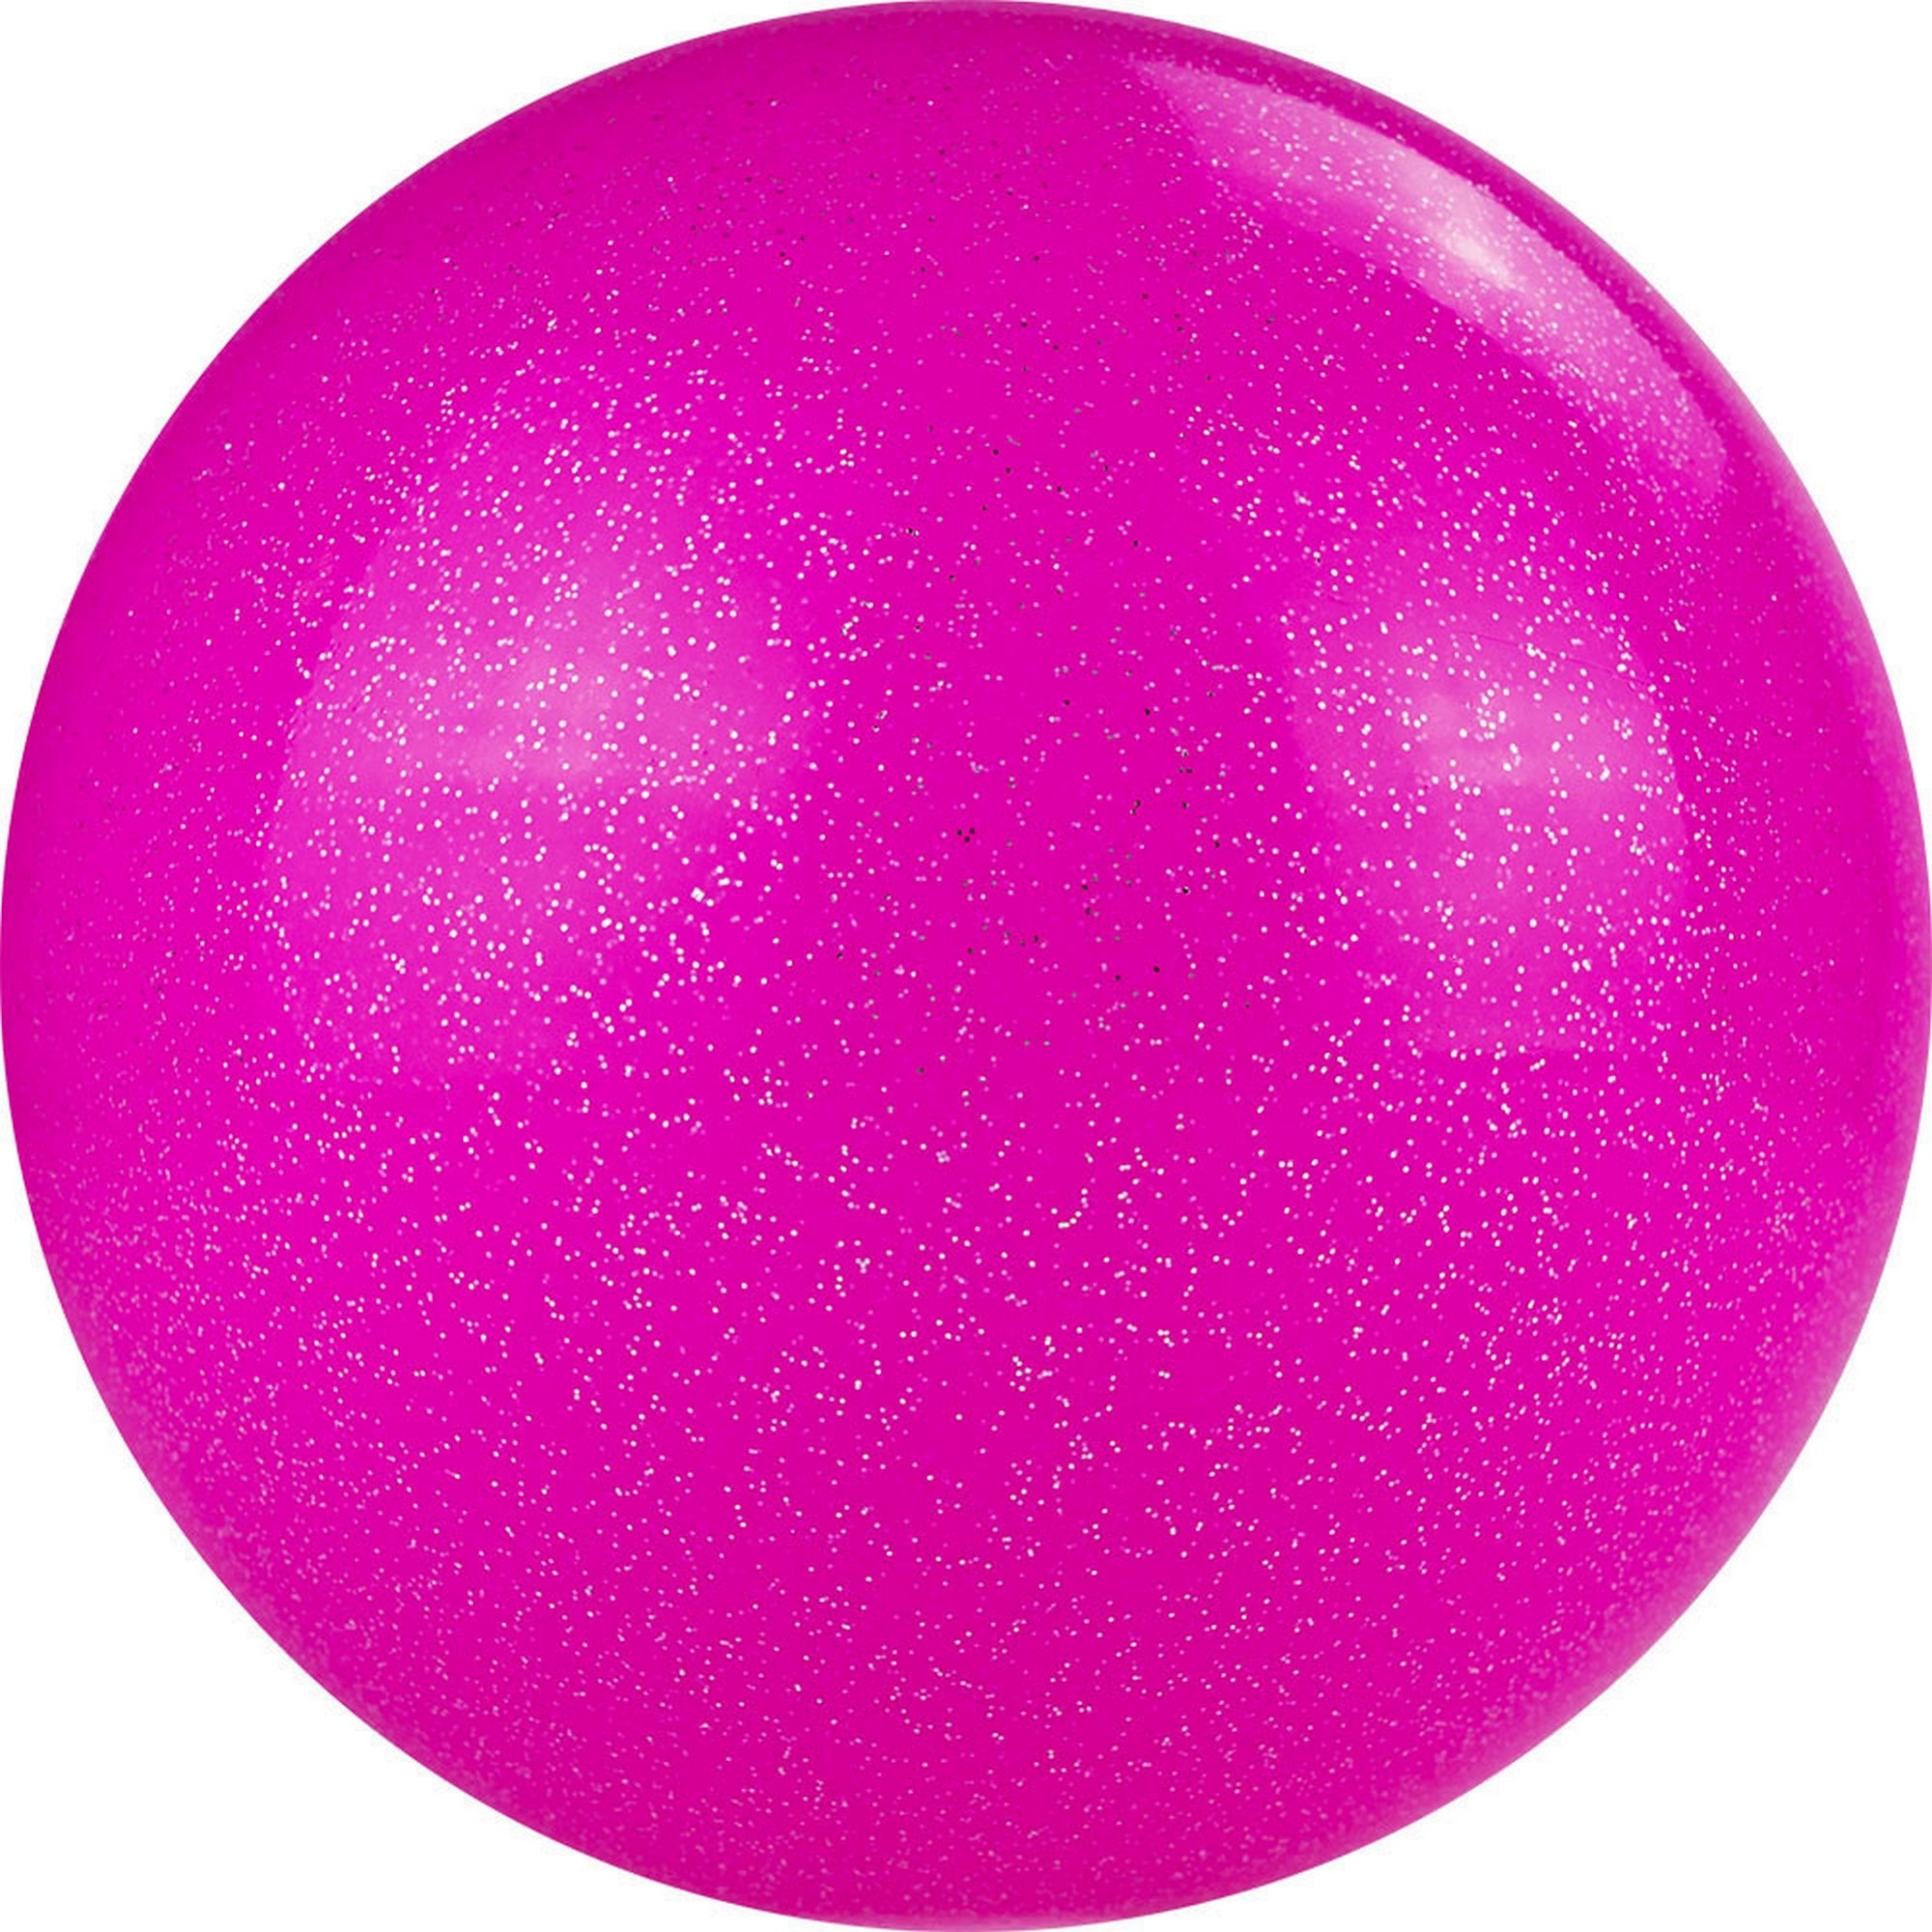 фото Мяч для художественной гимнастики d19 см torres пвх agp-19-10 розовый с блестками